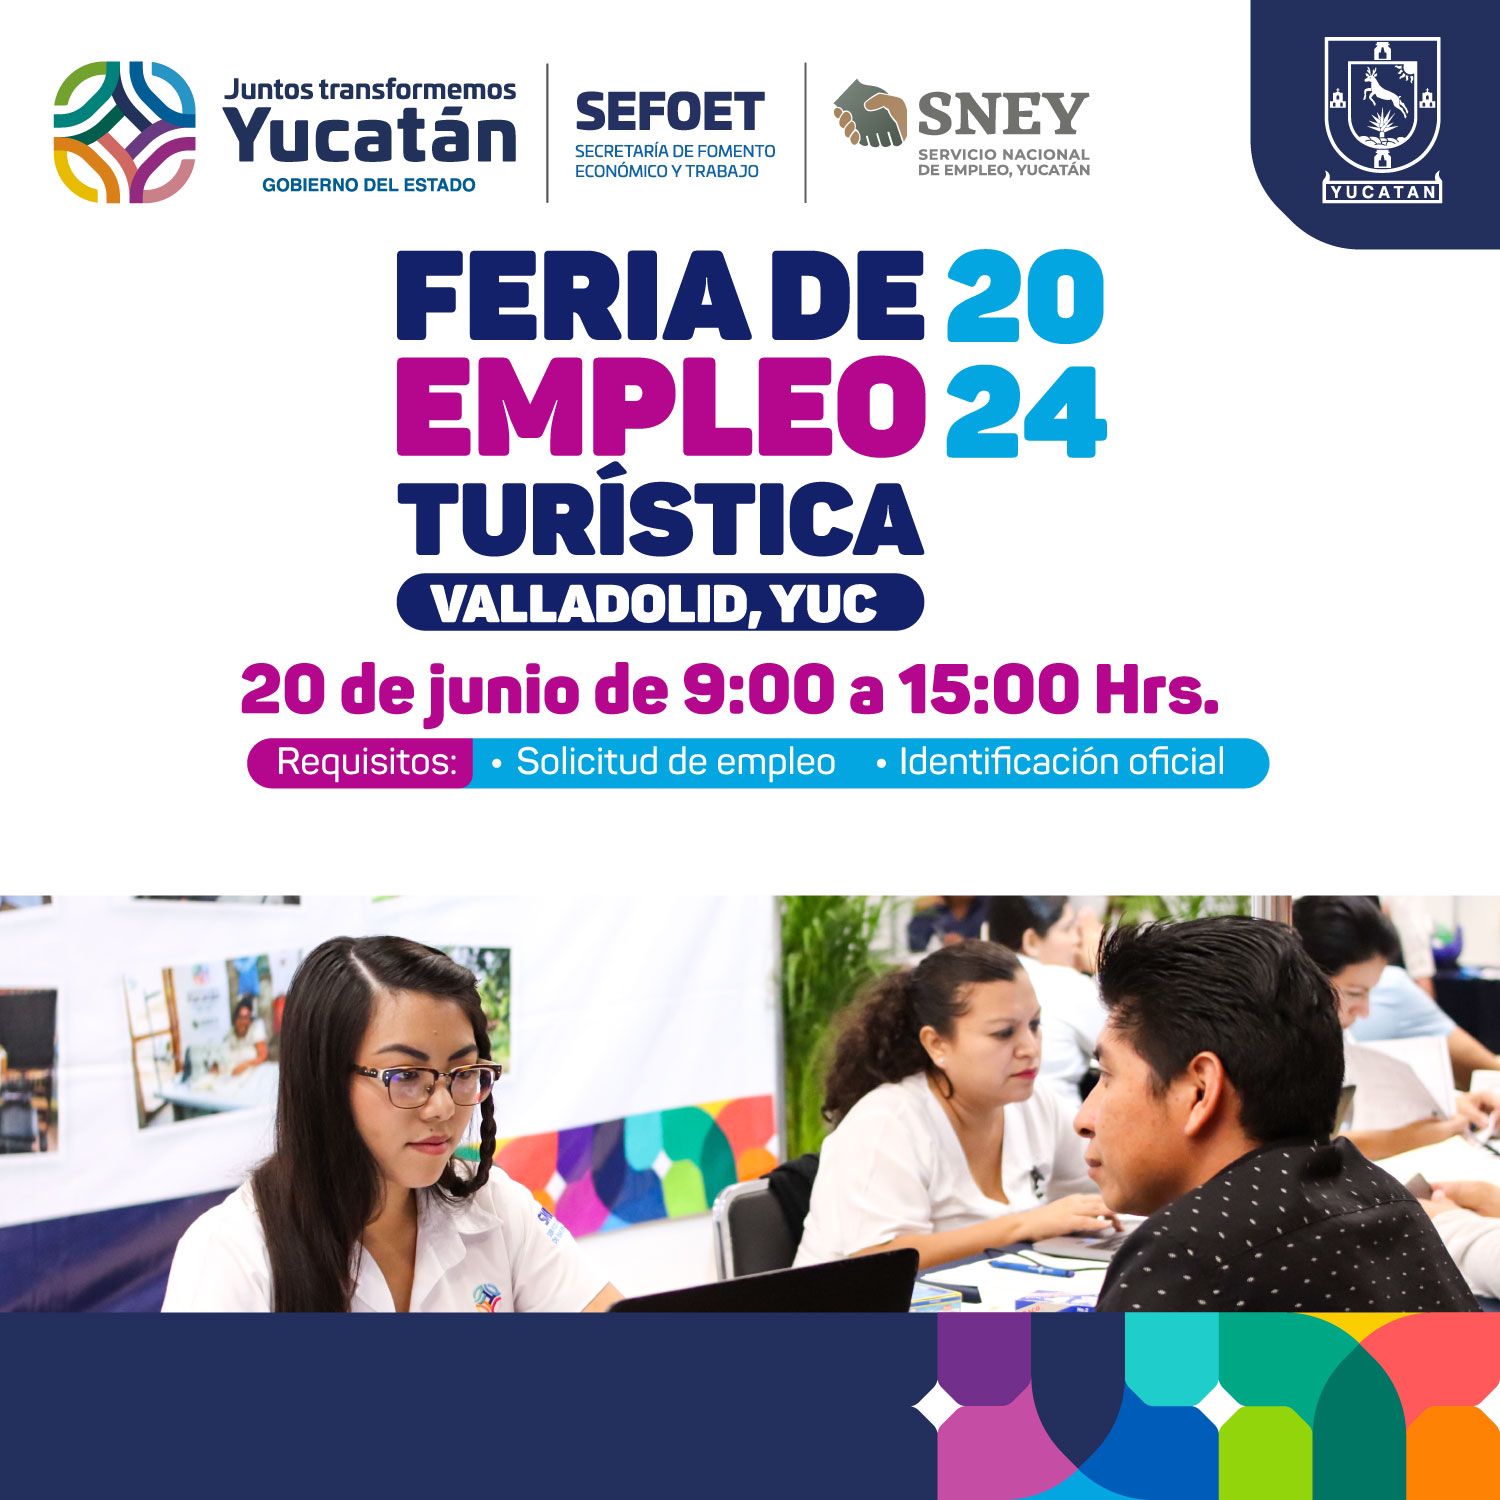 Feria de empleo del turismo en Valladolid este jueves 20.